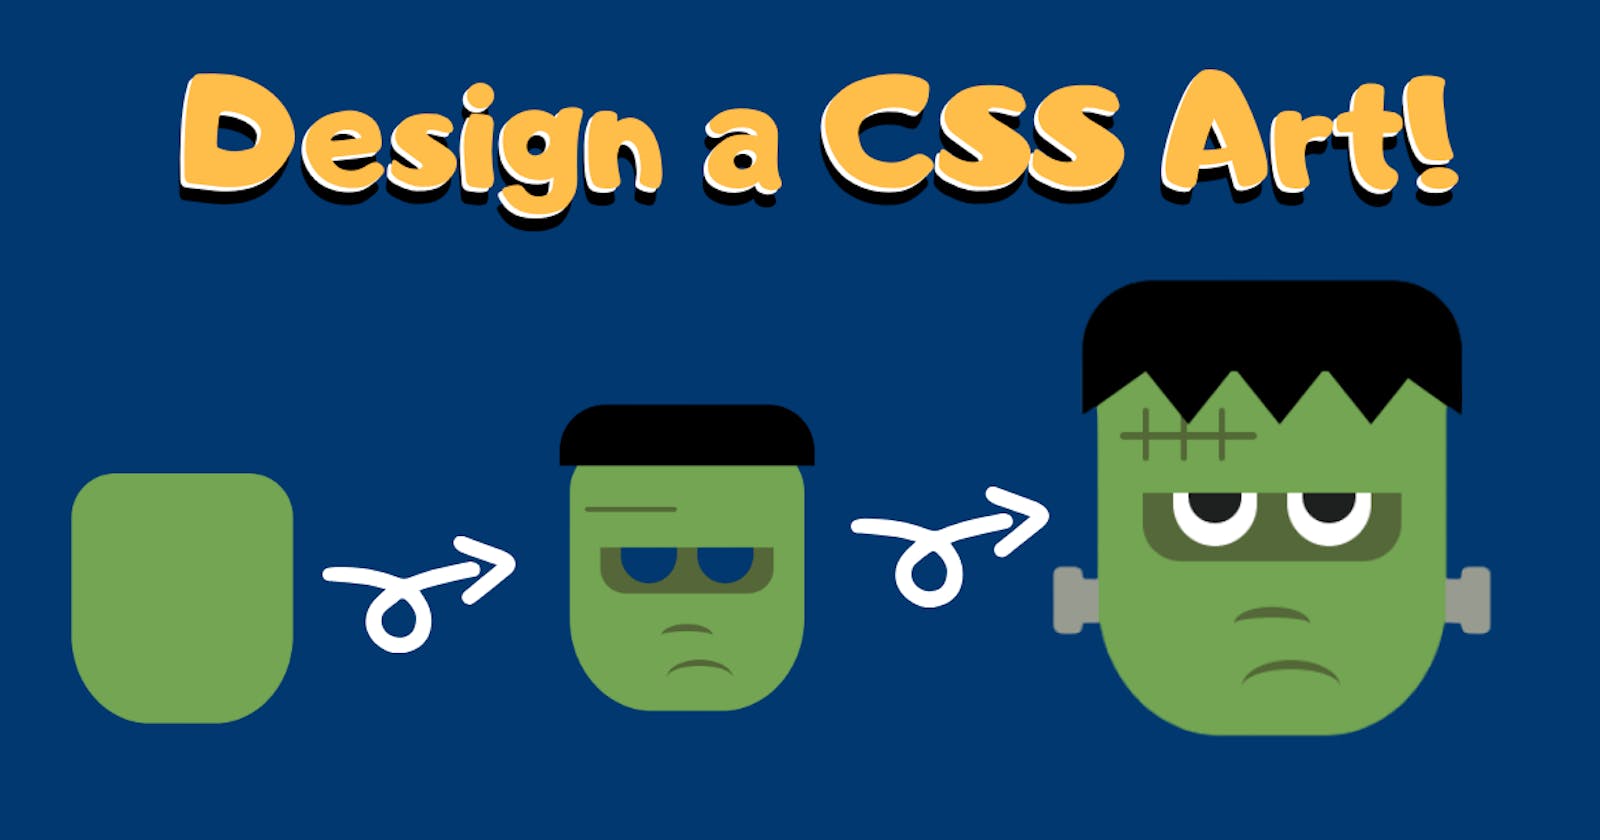 Design a CSS Art-(Frankenstein)